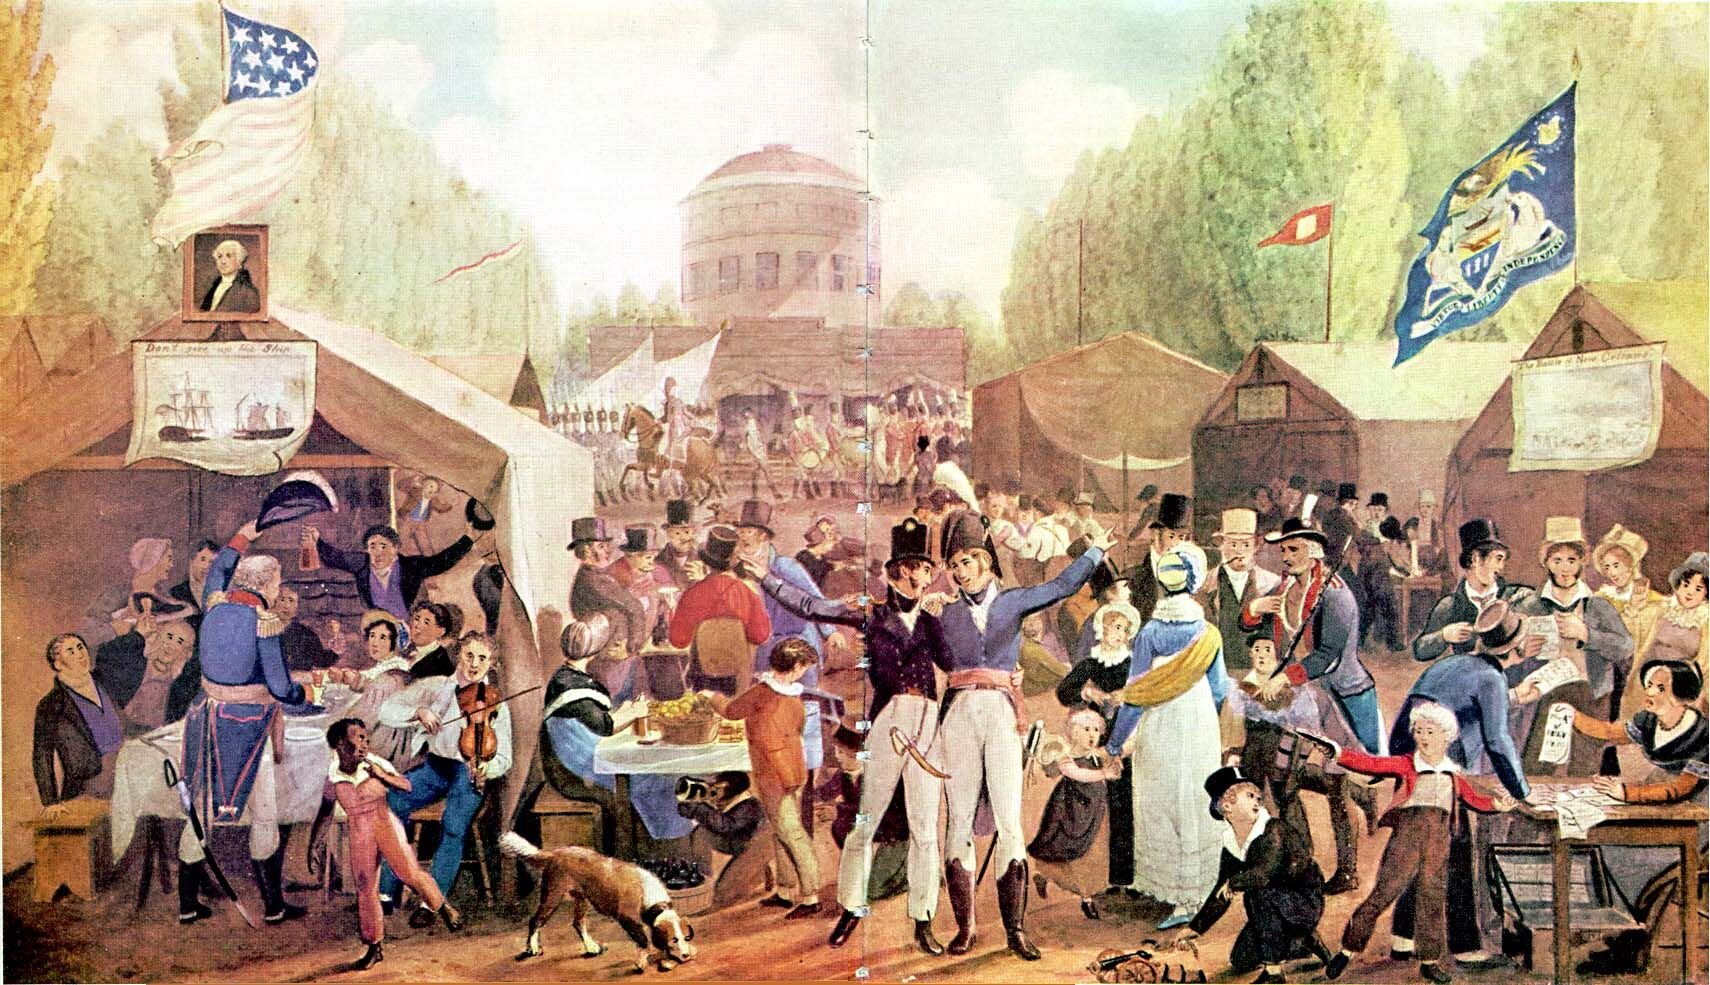 4th-of-July-1819-Philadelphia-John-Lewis-Krimmel.jpg?format=2500w